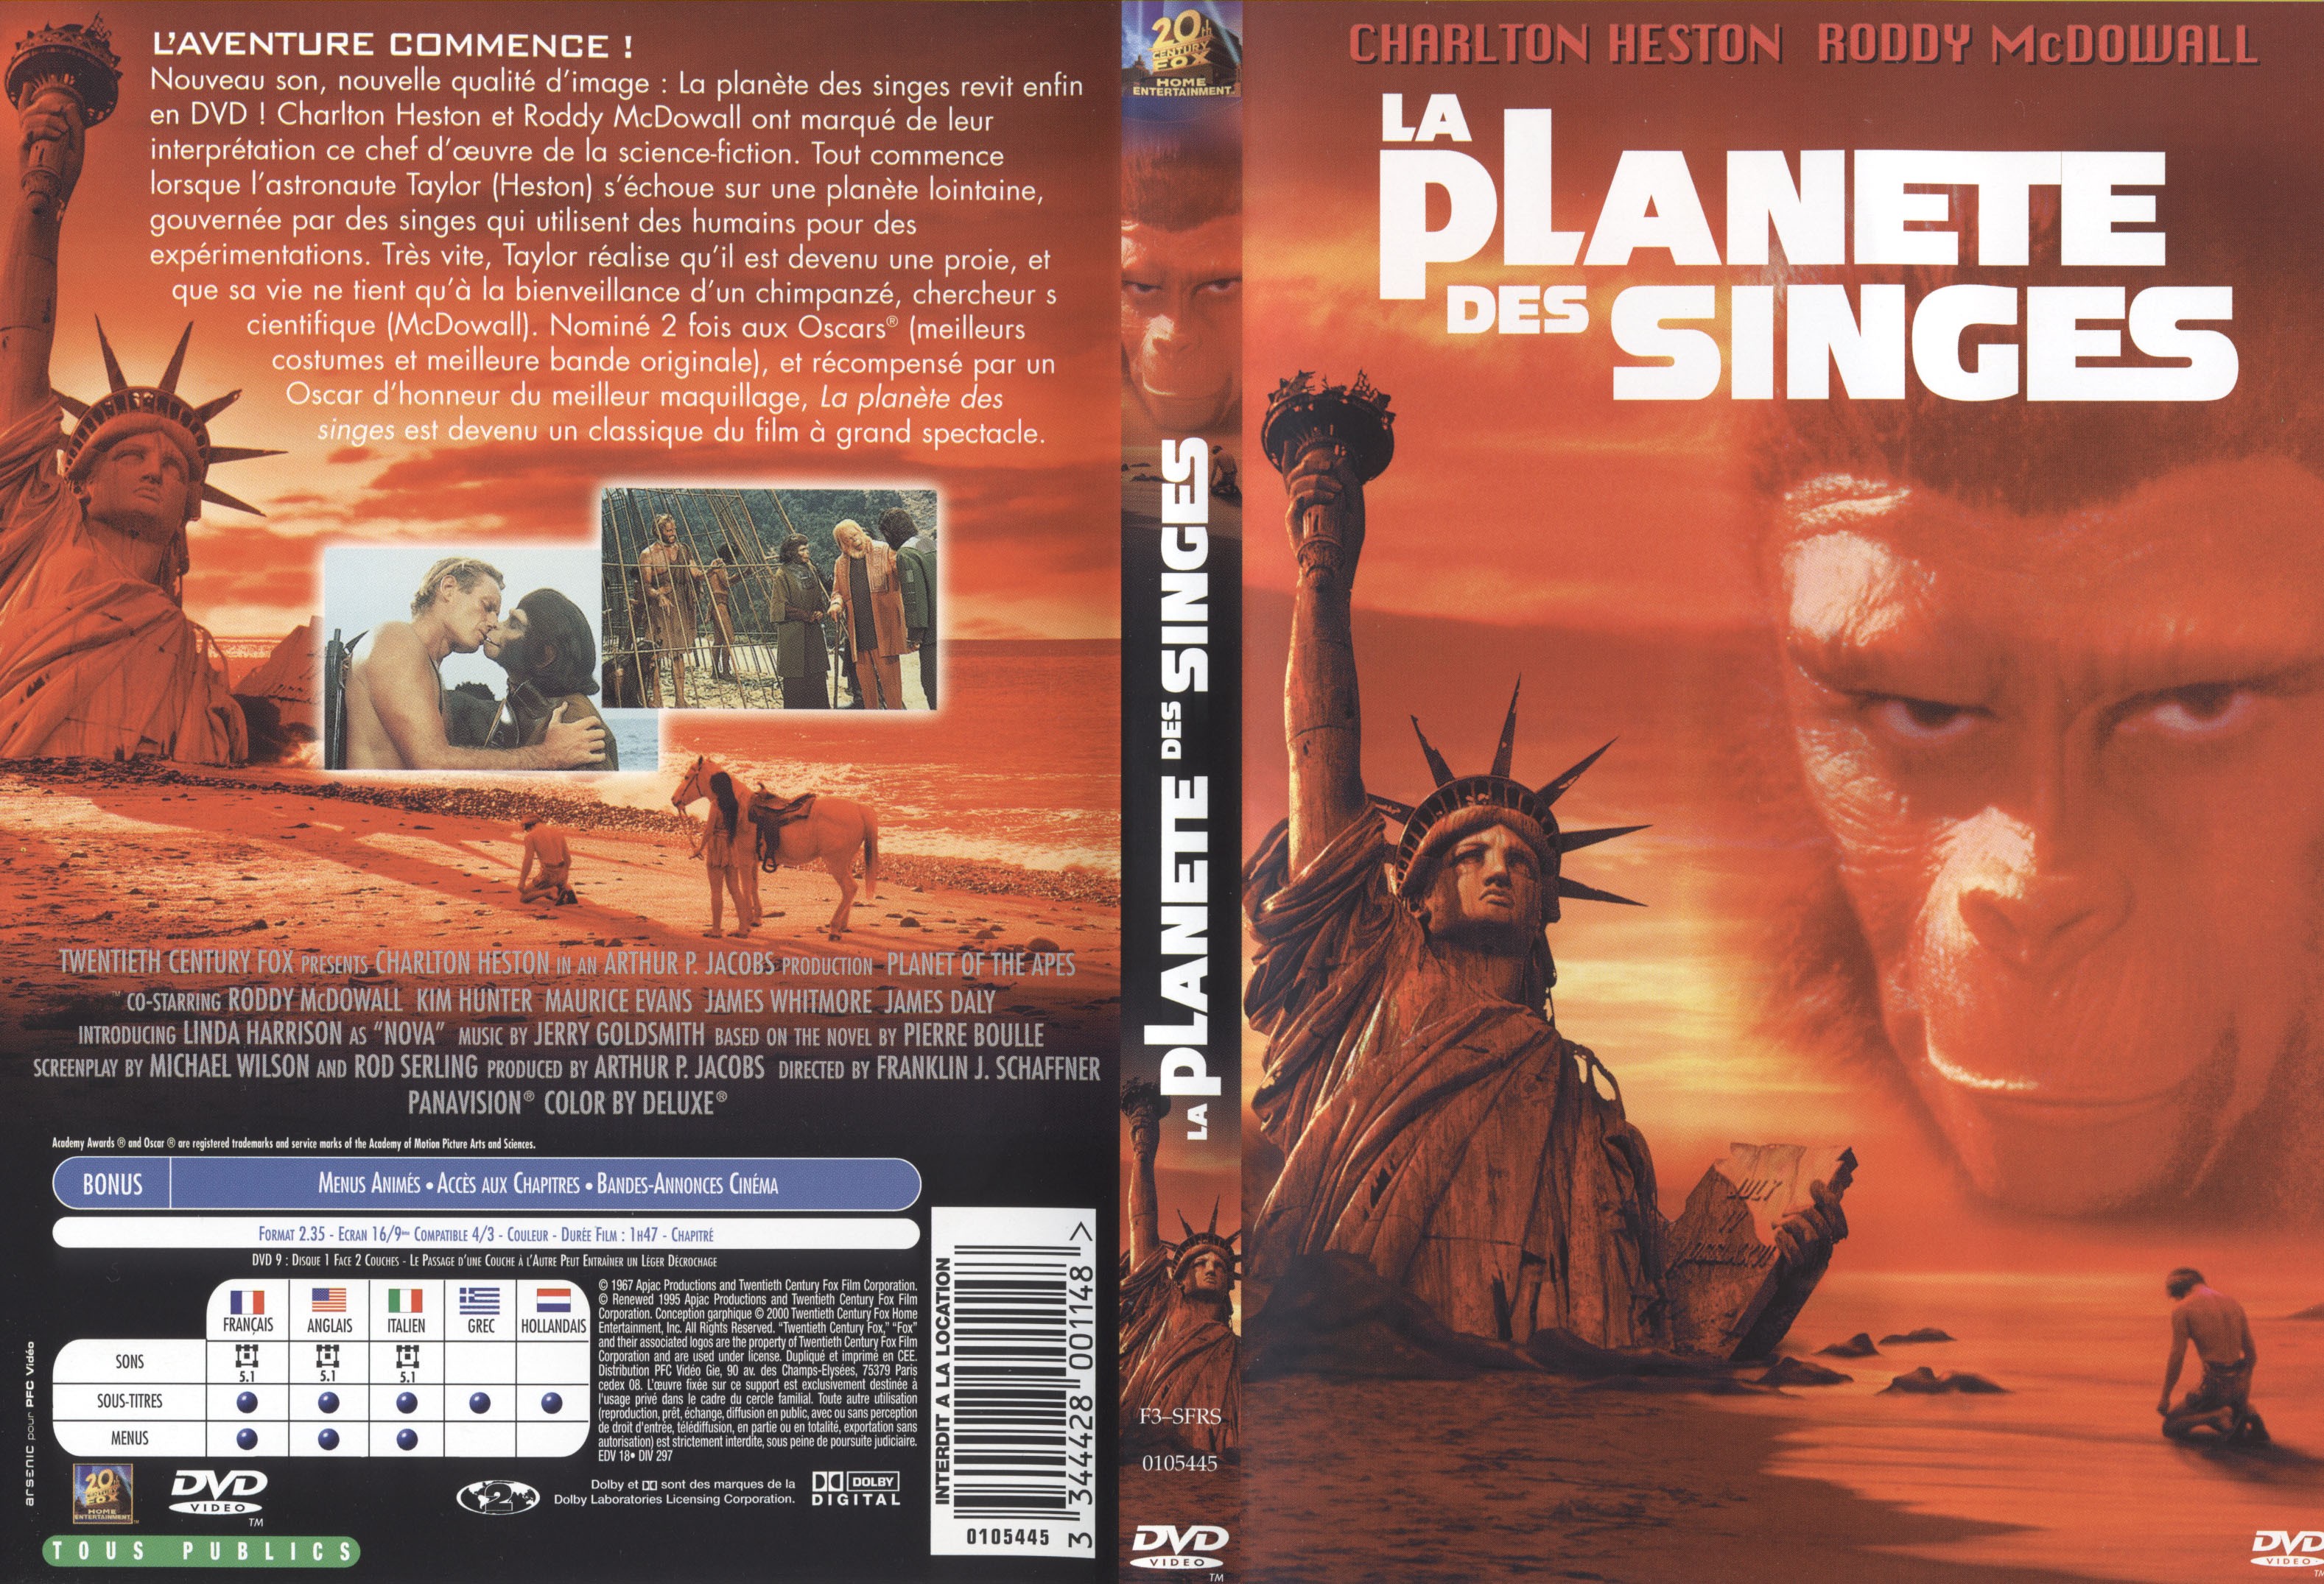 Jaquette DVD La planete des singes 1967